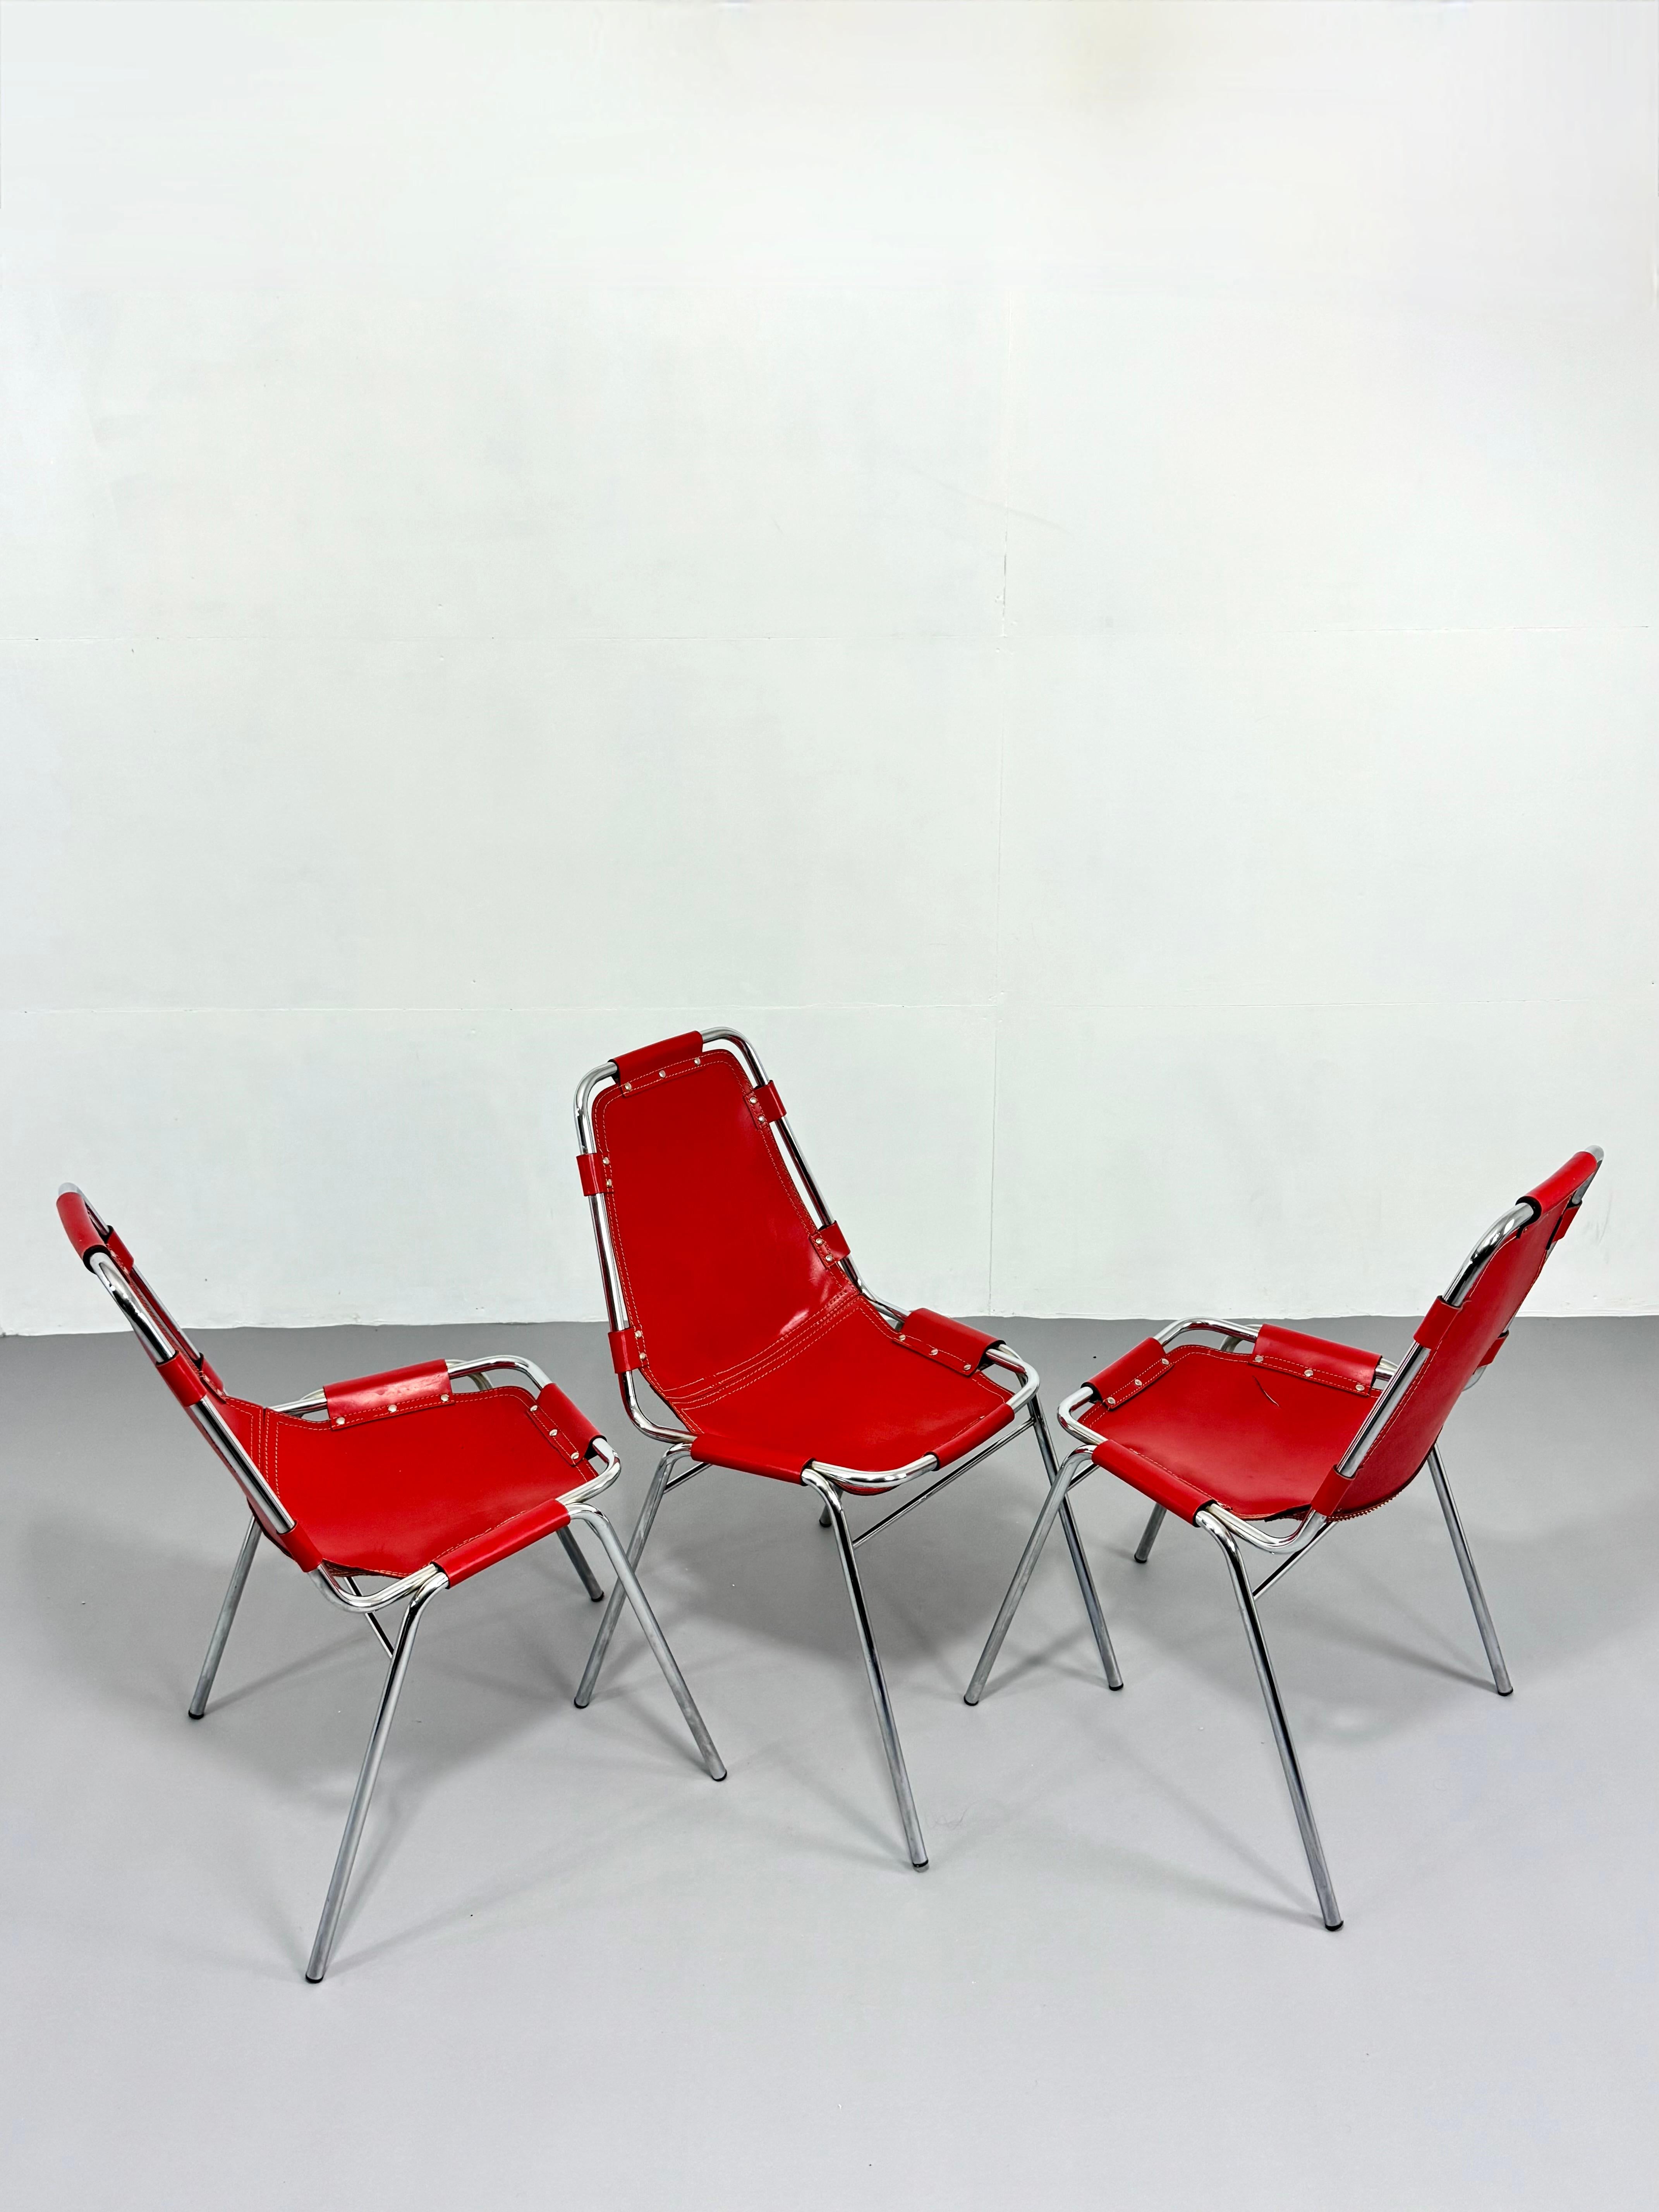 Esszimmerstühle Les Arcs von DalVera für les Arcs, Frankreich, 1960er Jahre, rot  (20. Jahrhundert) im Angebot